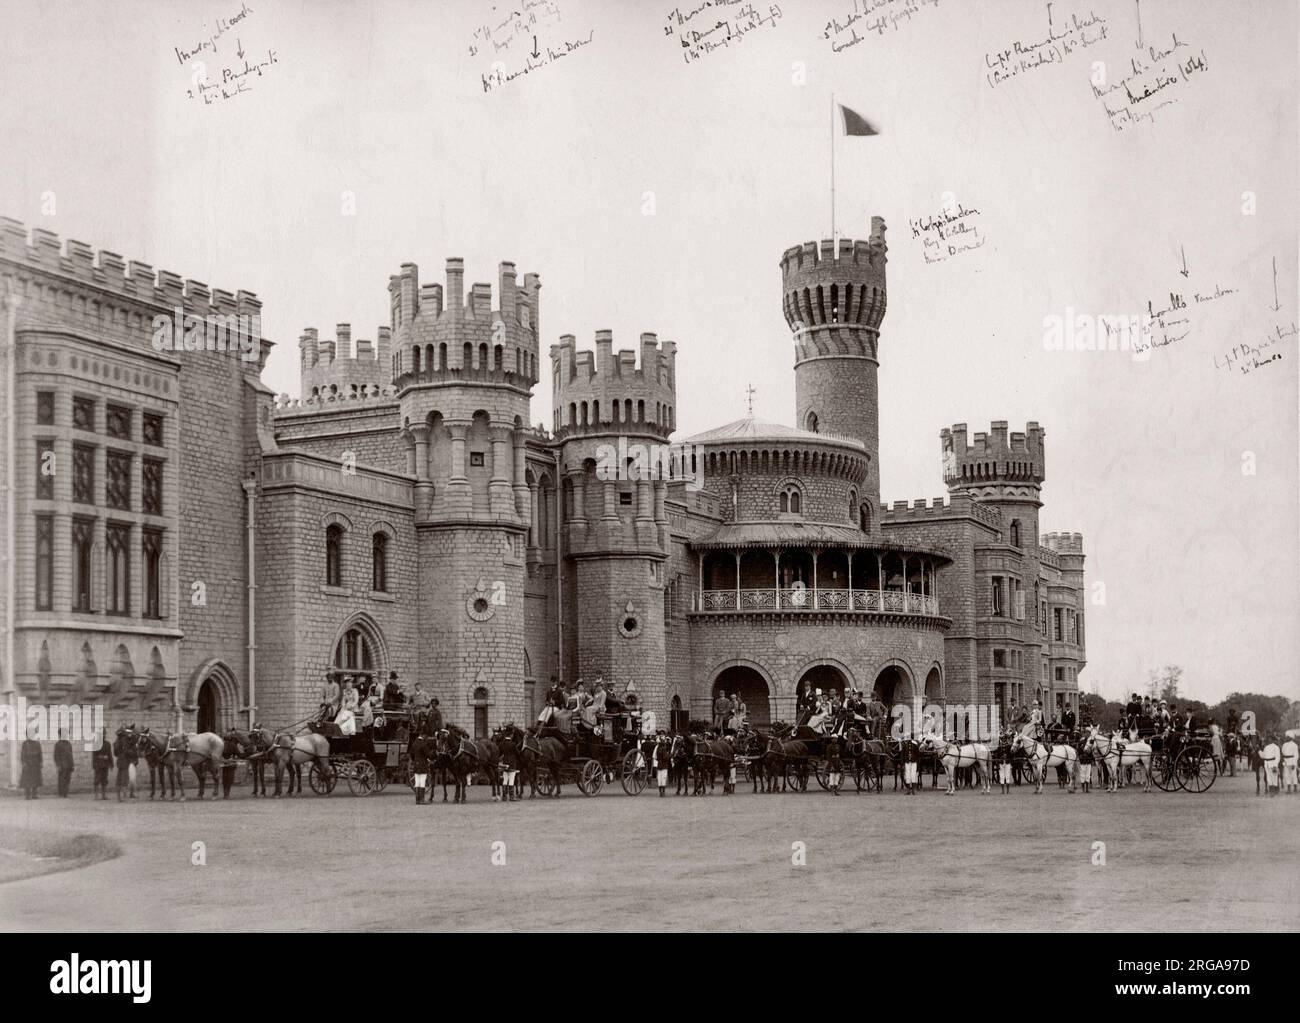 C.1890s pour l'Inde - dignitaires indiens et européens à l'extérieur du palais du maharadjah ou Bangalore - sous-titrées. (Nous avons aussi une version non sous-titrées). Banque D'Images